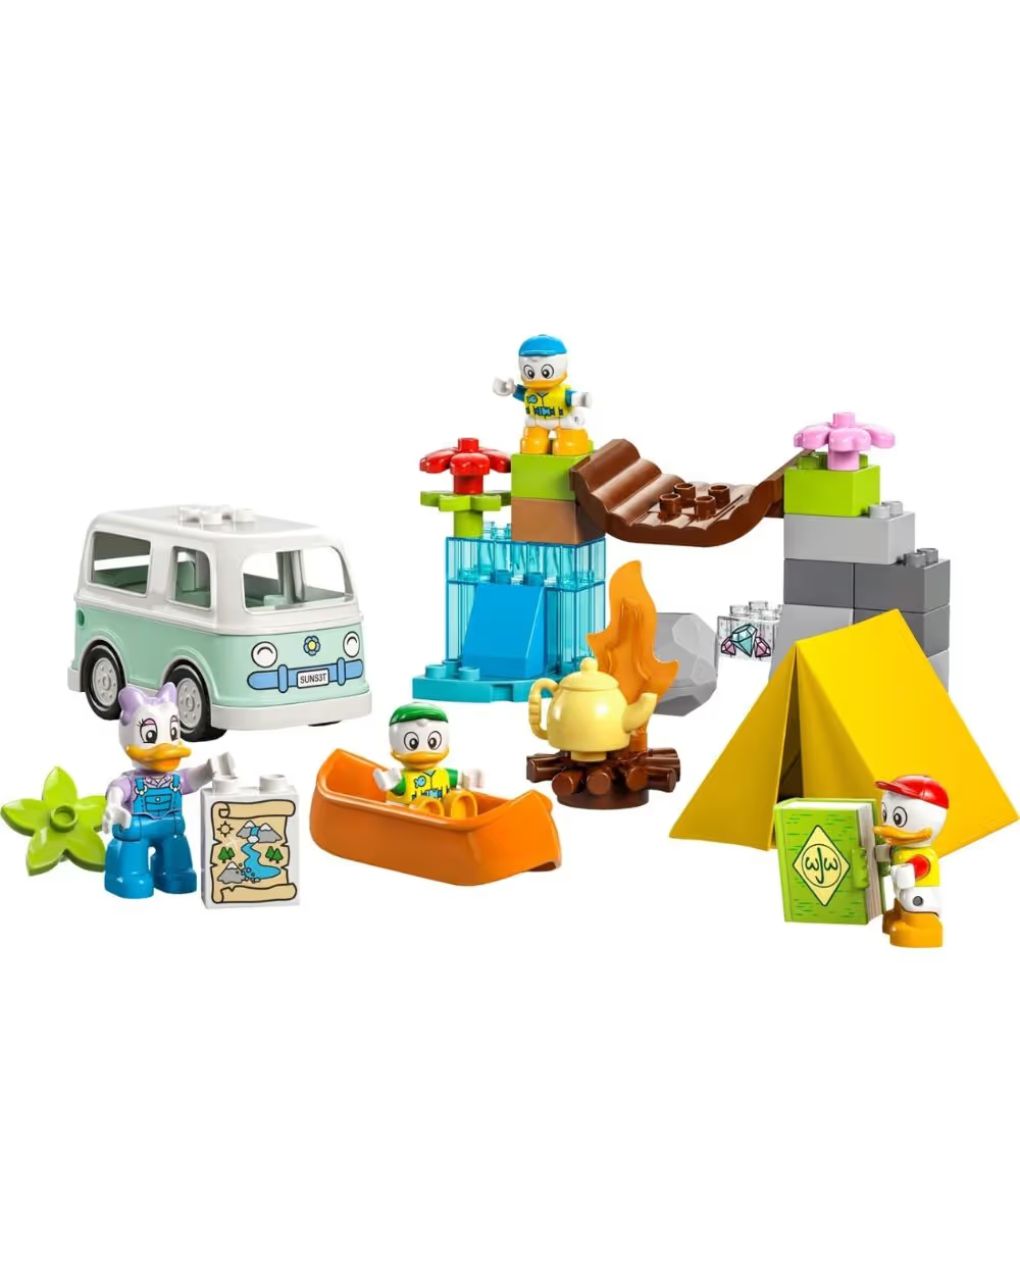 Lego duplo camping adventure 10997 - LEGO DUPLO